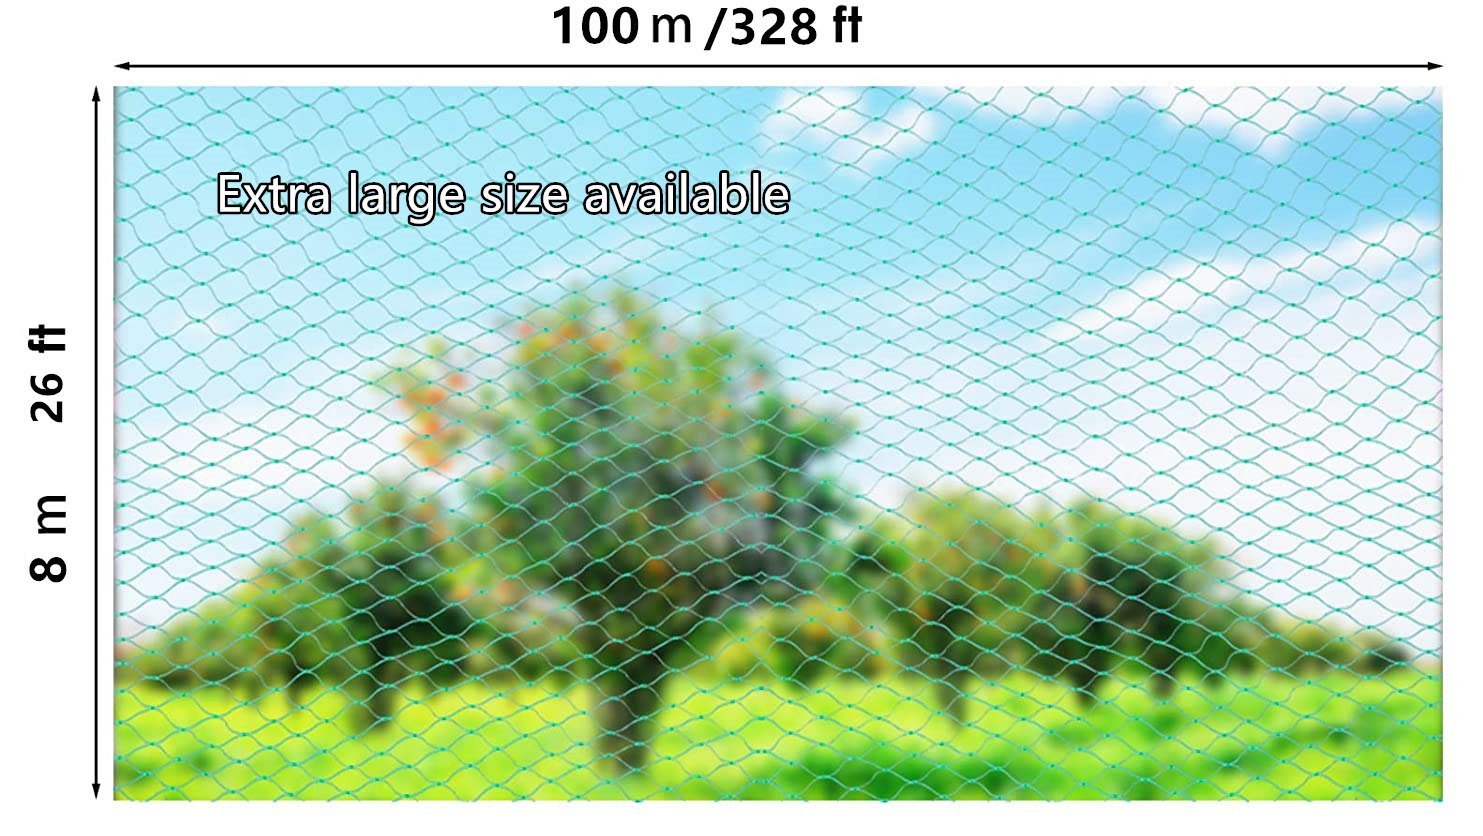 large size bird netting